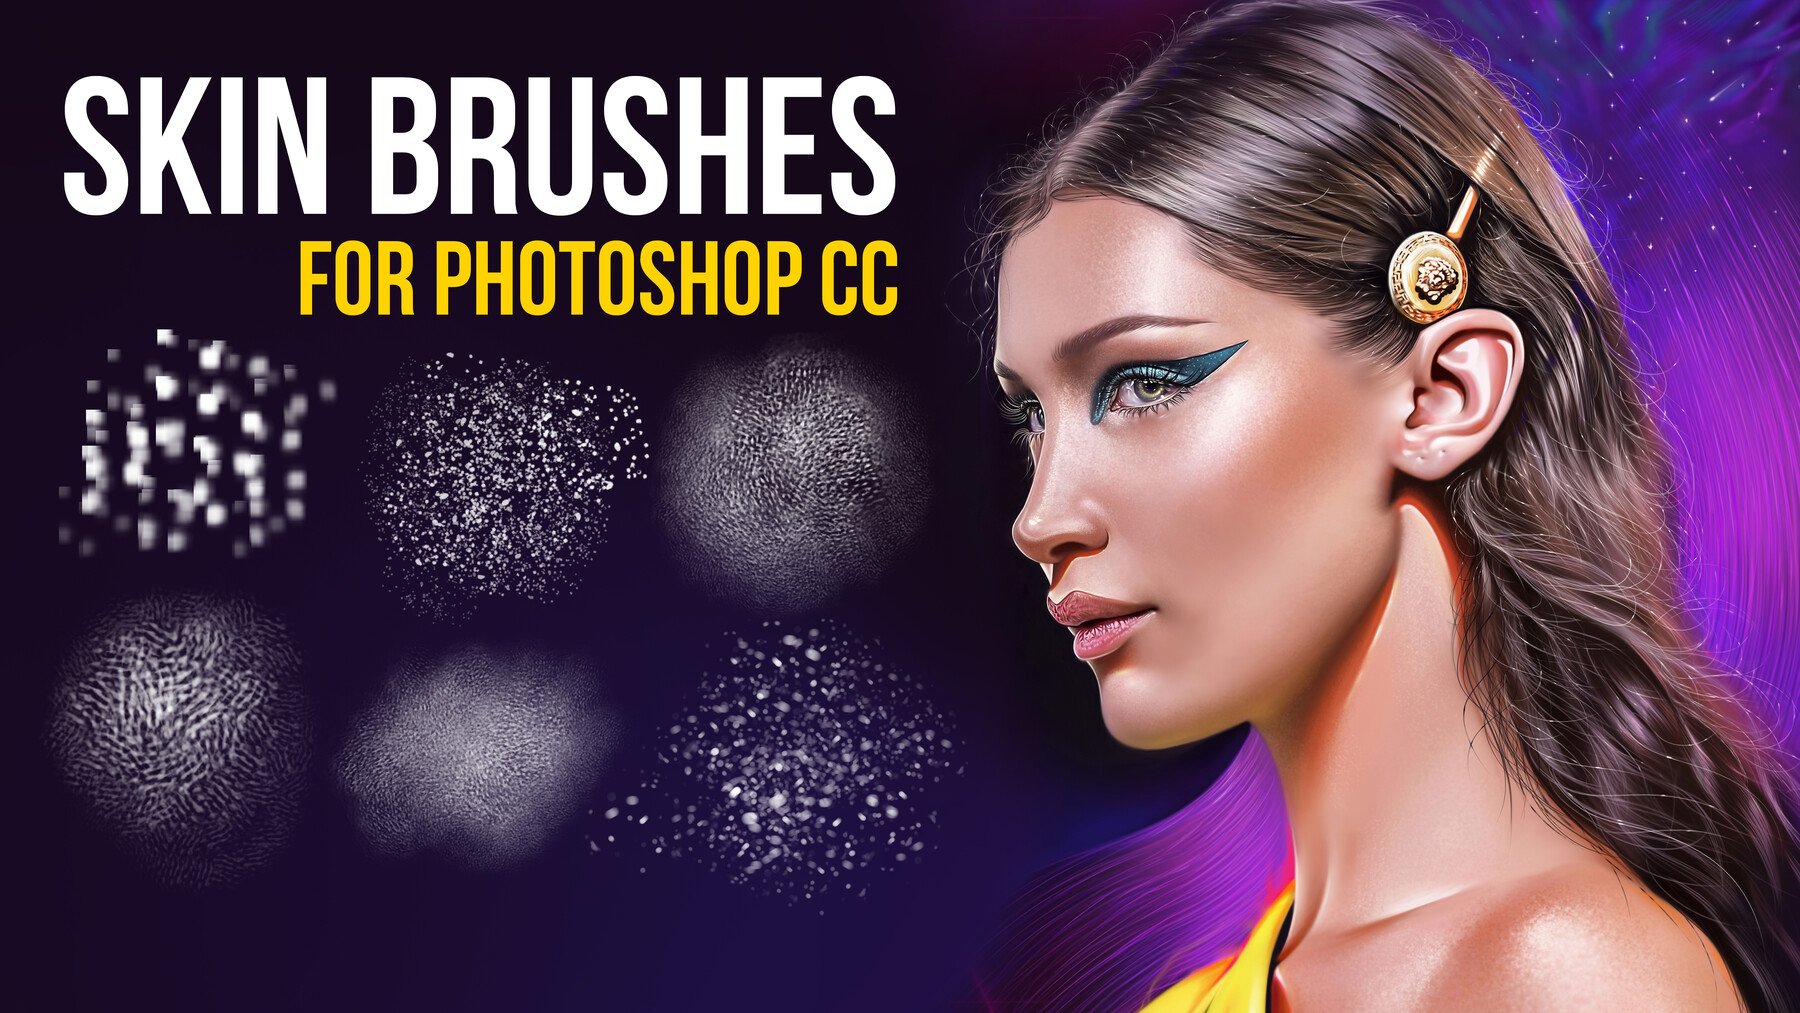 adobe photoshop 7.0 skin brushes free download